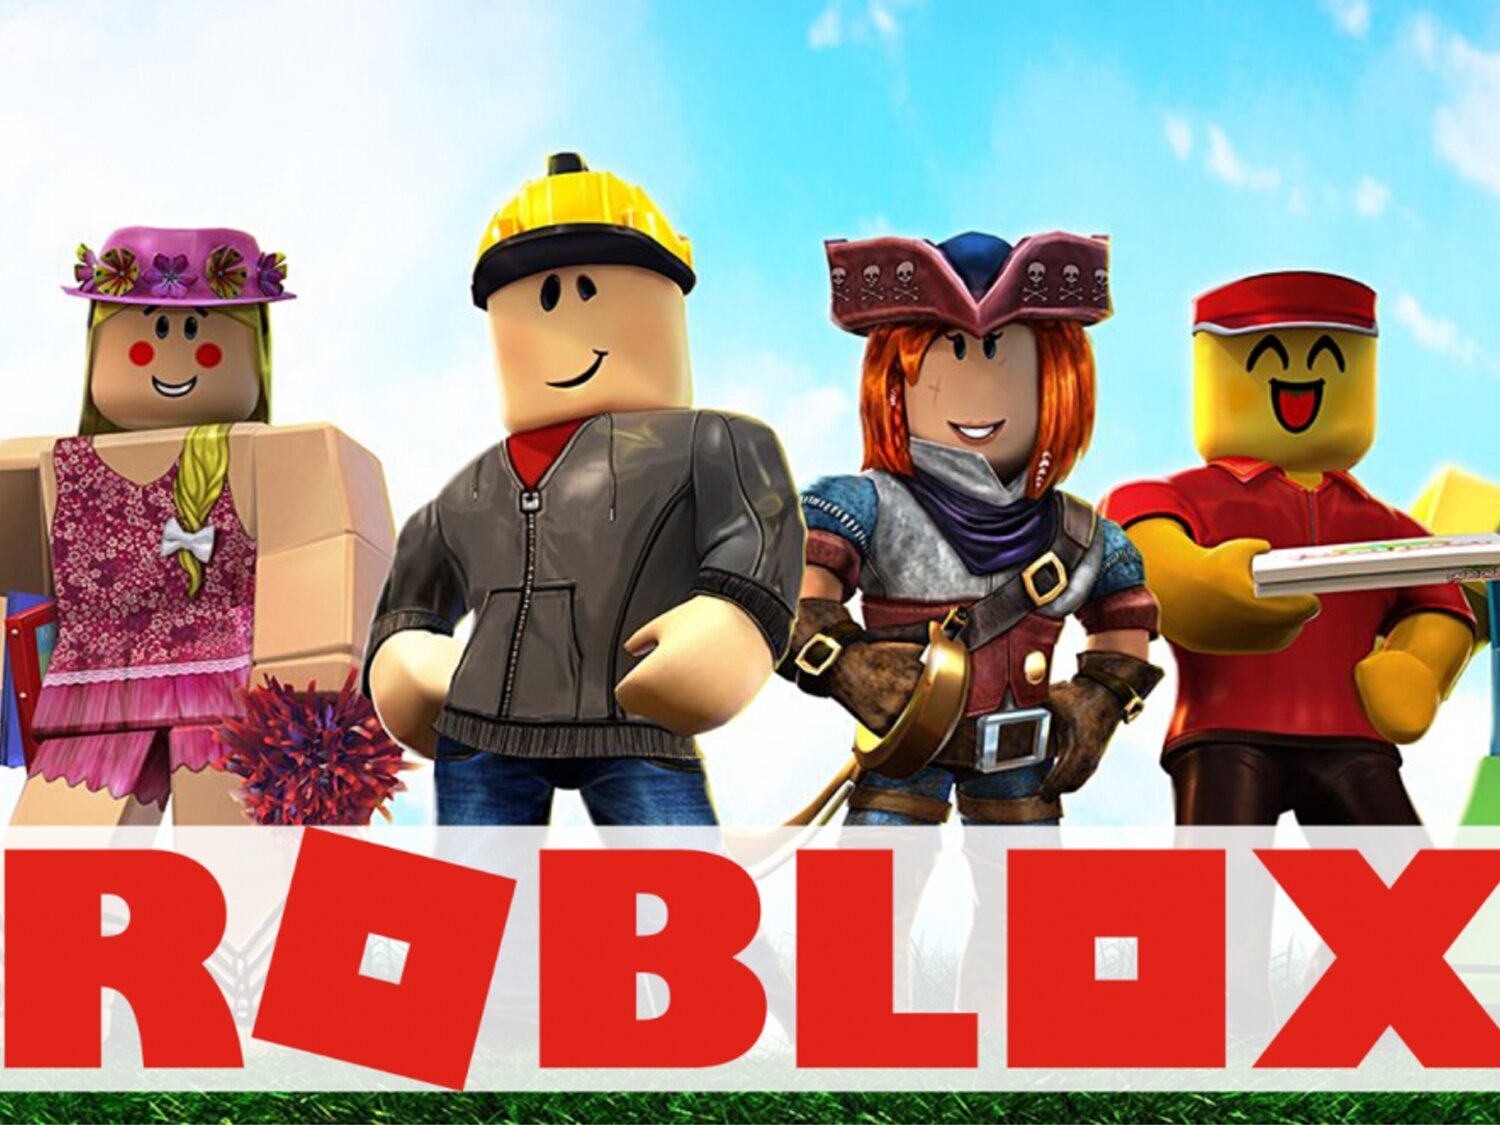 Roblox, un juego para millones de niños que se llena de fiestas sexuales, fetiches y nazis